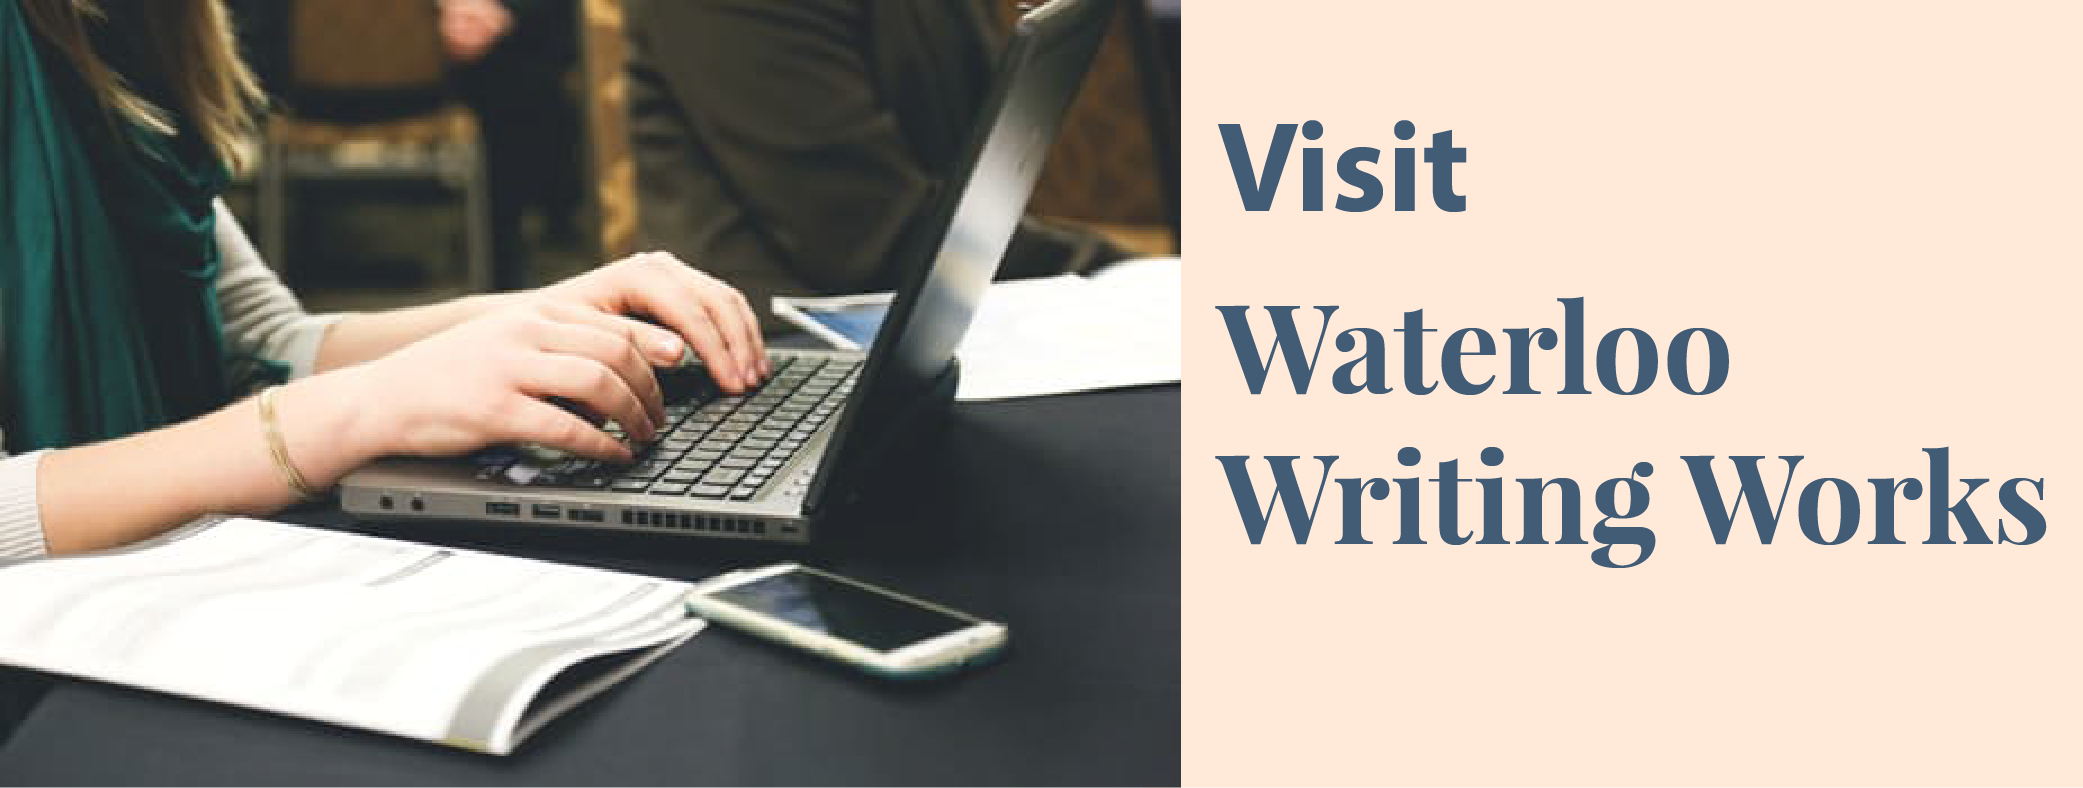 Visit Waterloo Writing Works